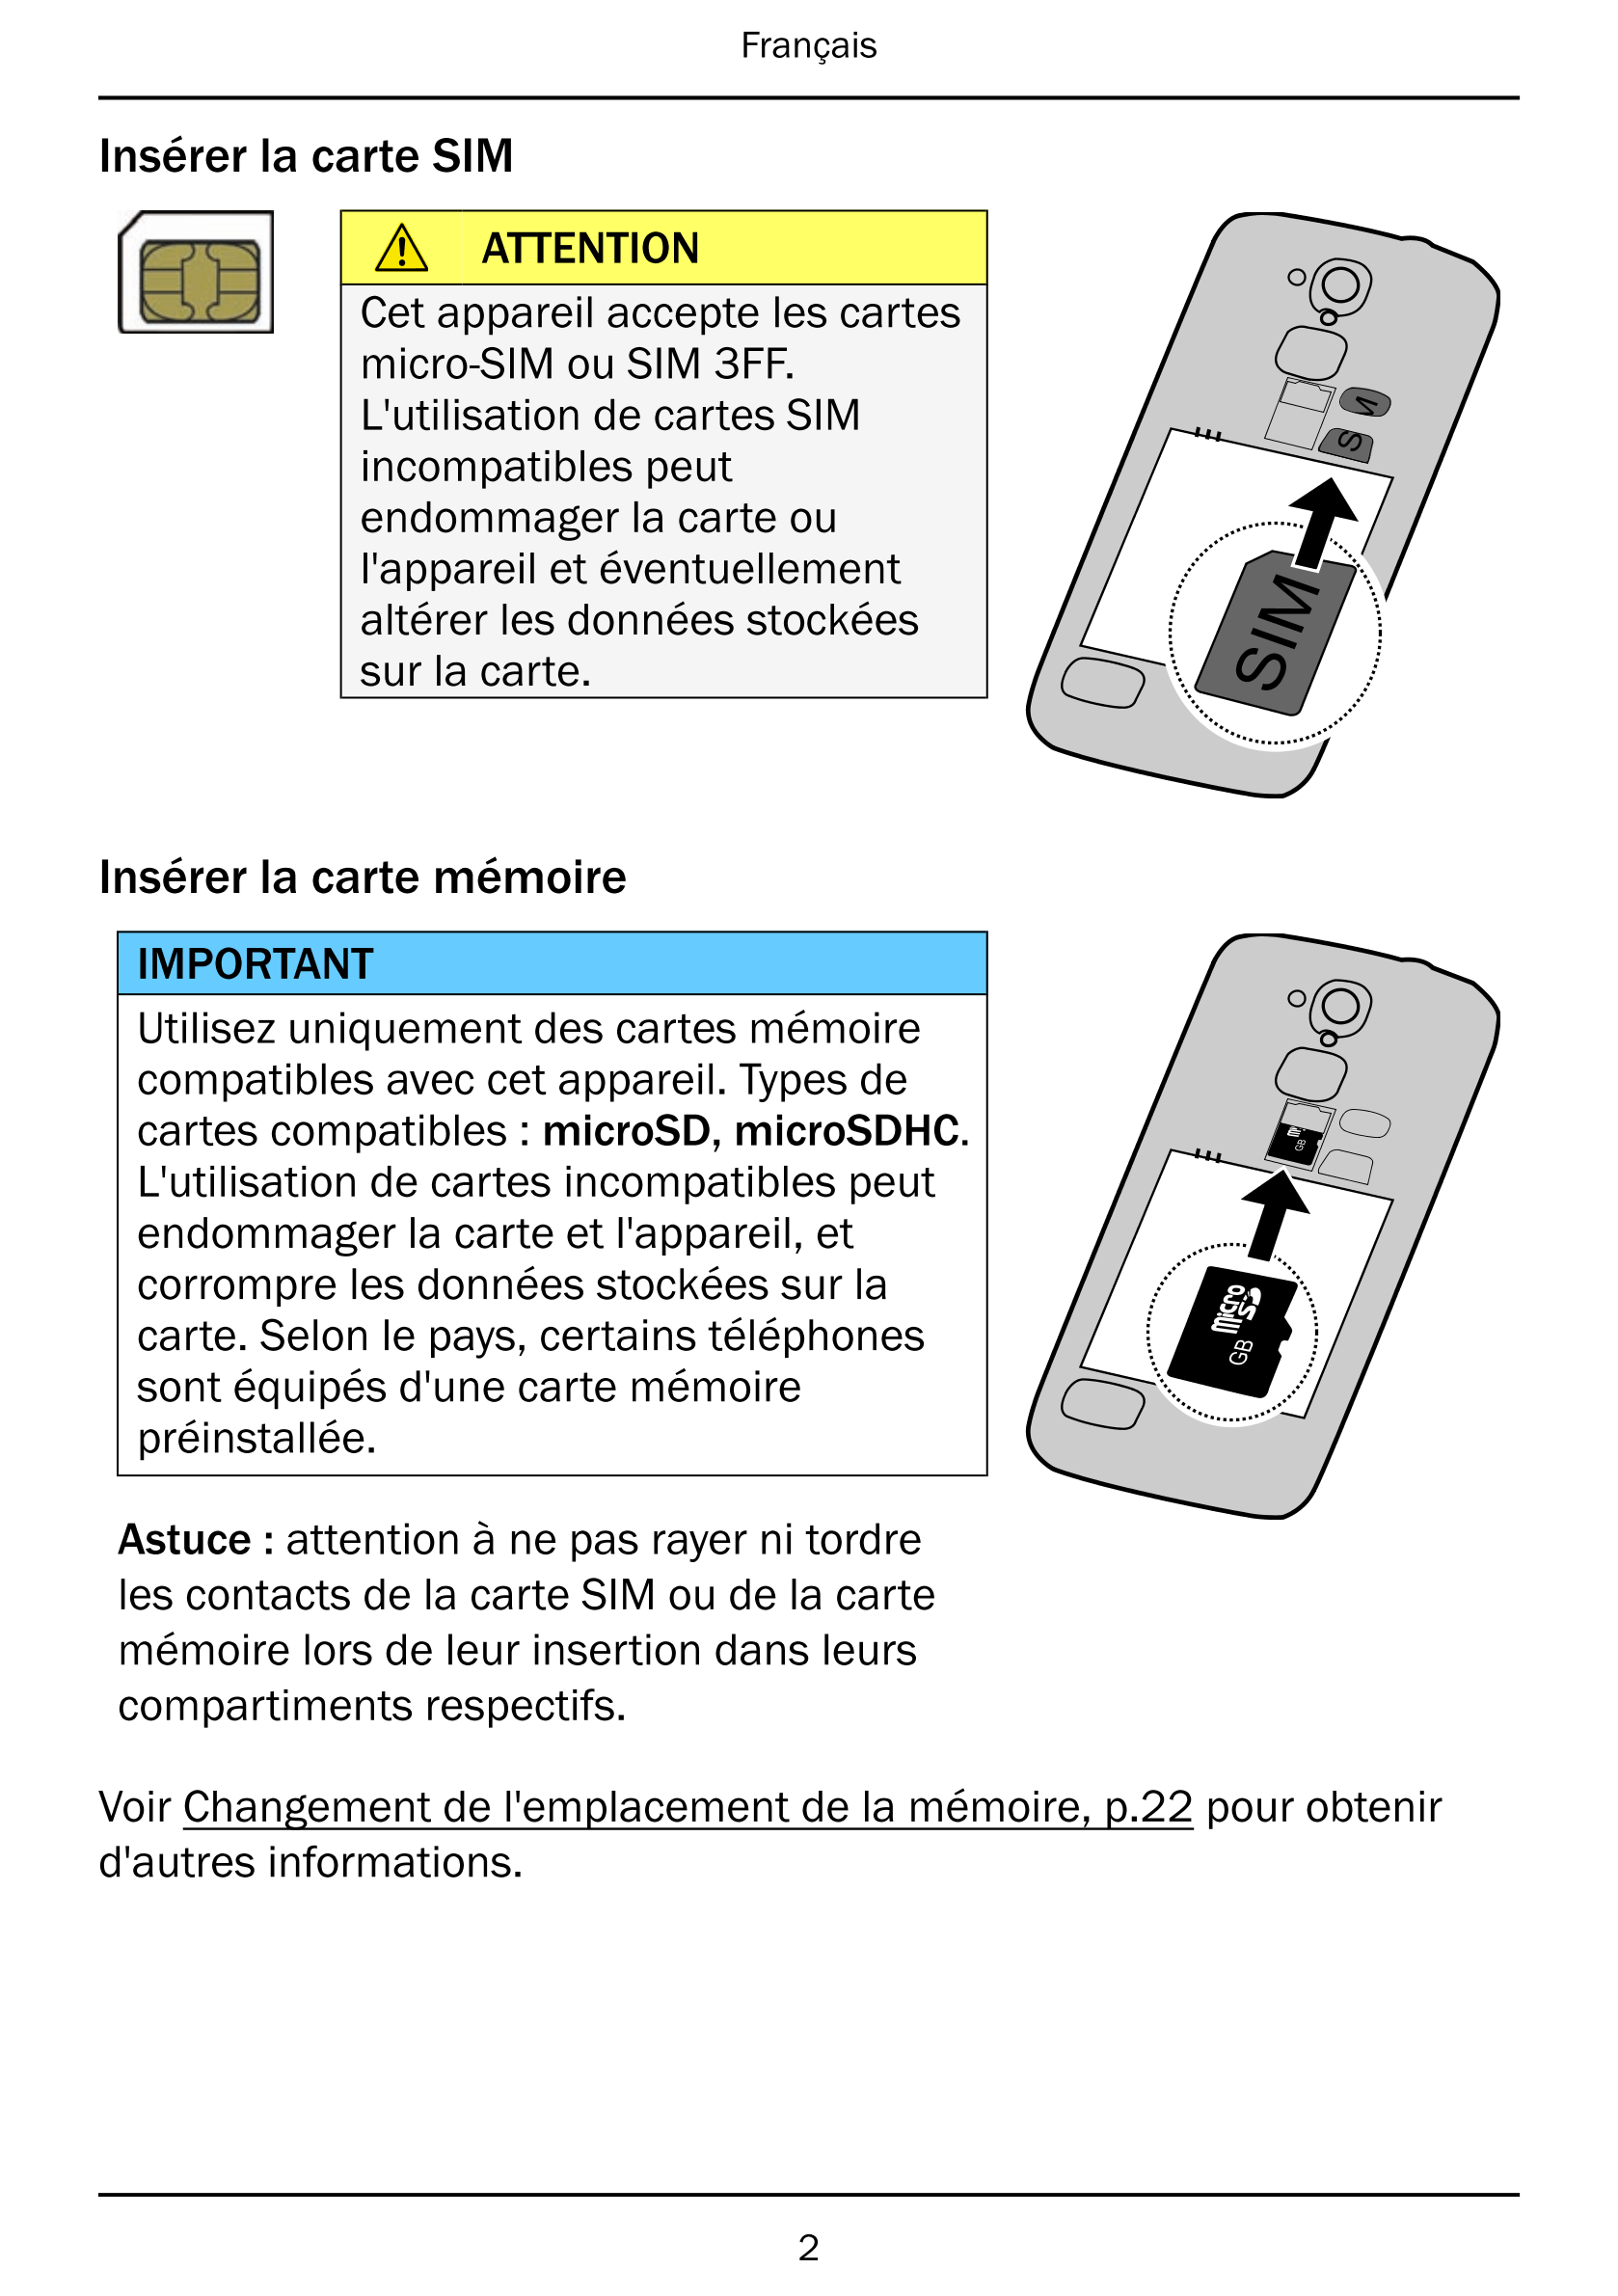 Français
Insérer la carte SIM
ATTENTION
Cet appareil accepte les cartes
micro-SIM ou SIM 3FF.
L'utilisation de cartes SIM
incomp